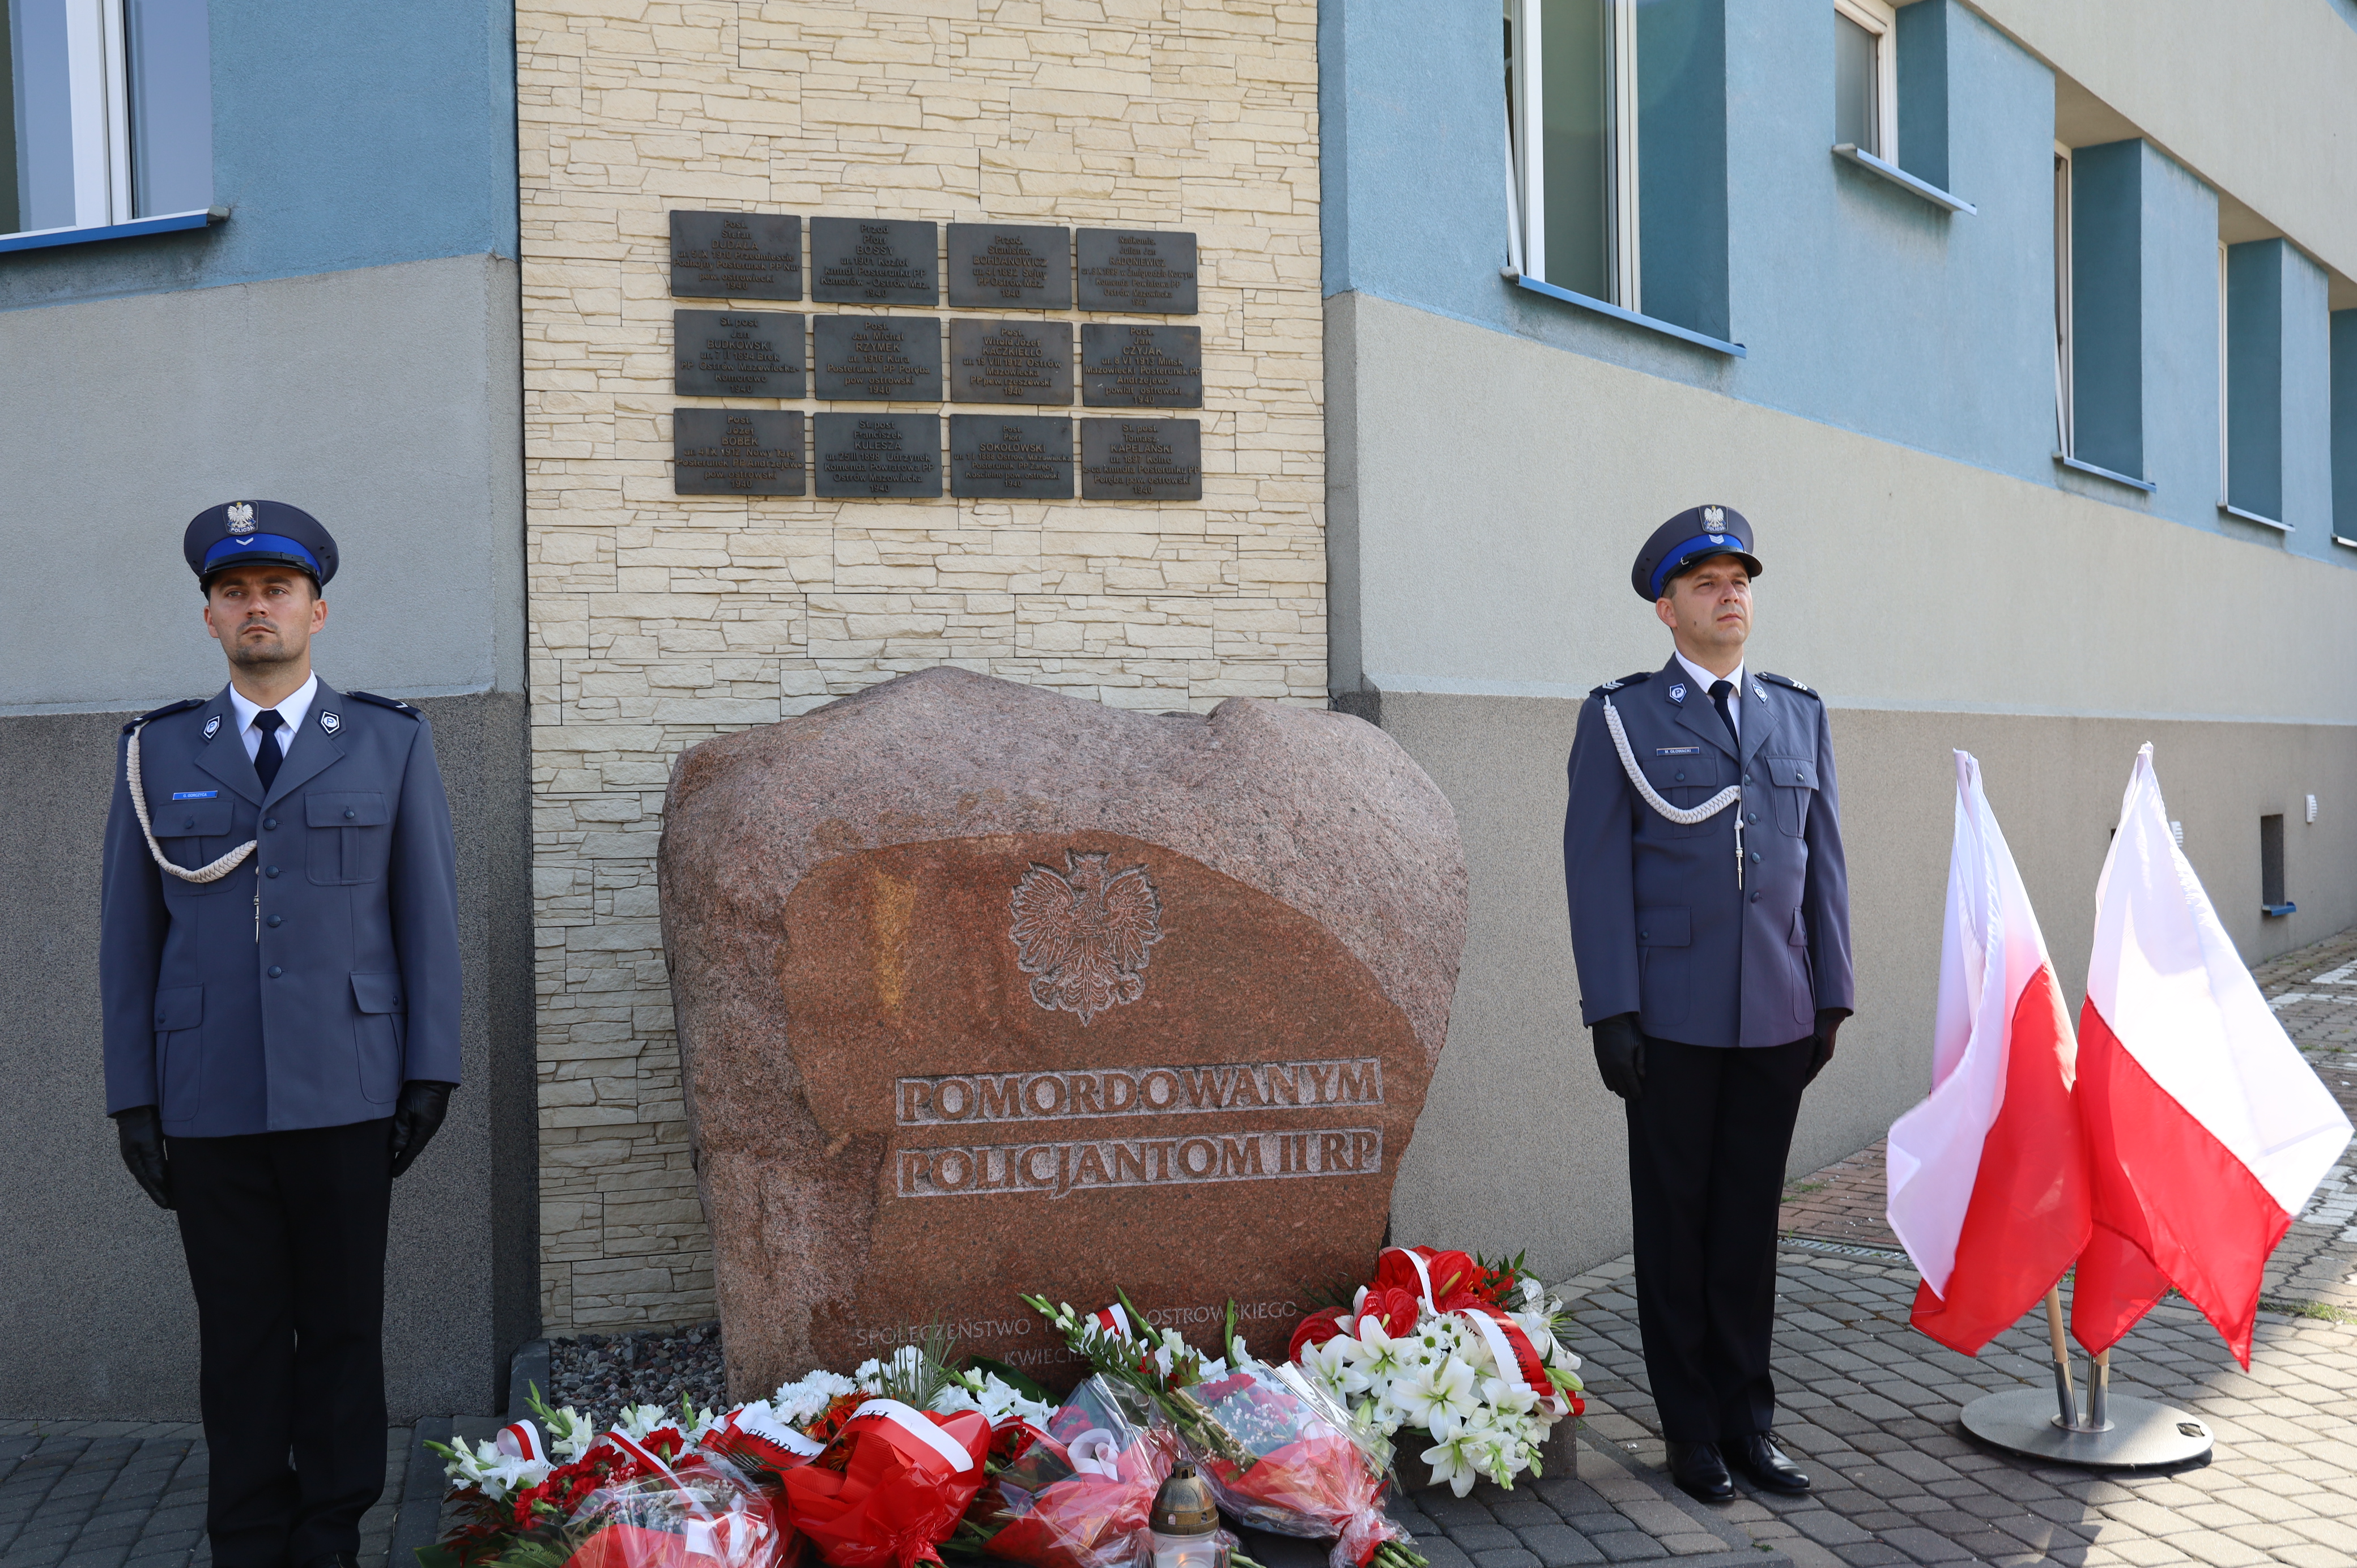 dwoch policjantów stoja przy pomniku pomordowanym policjantom II RP, złożone kwiaty pod pomnikiem, flagi państwowe stoją obok 